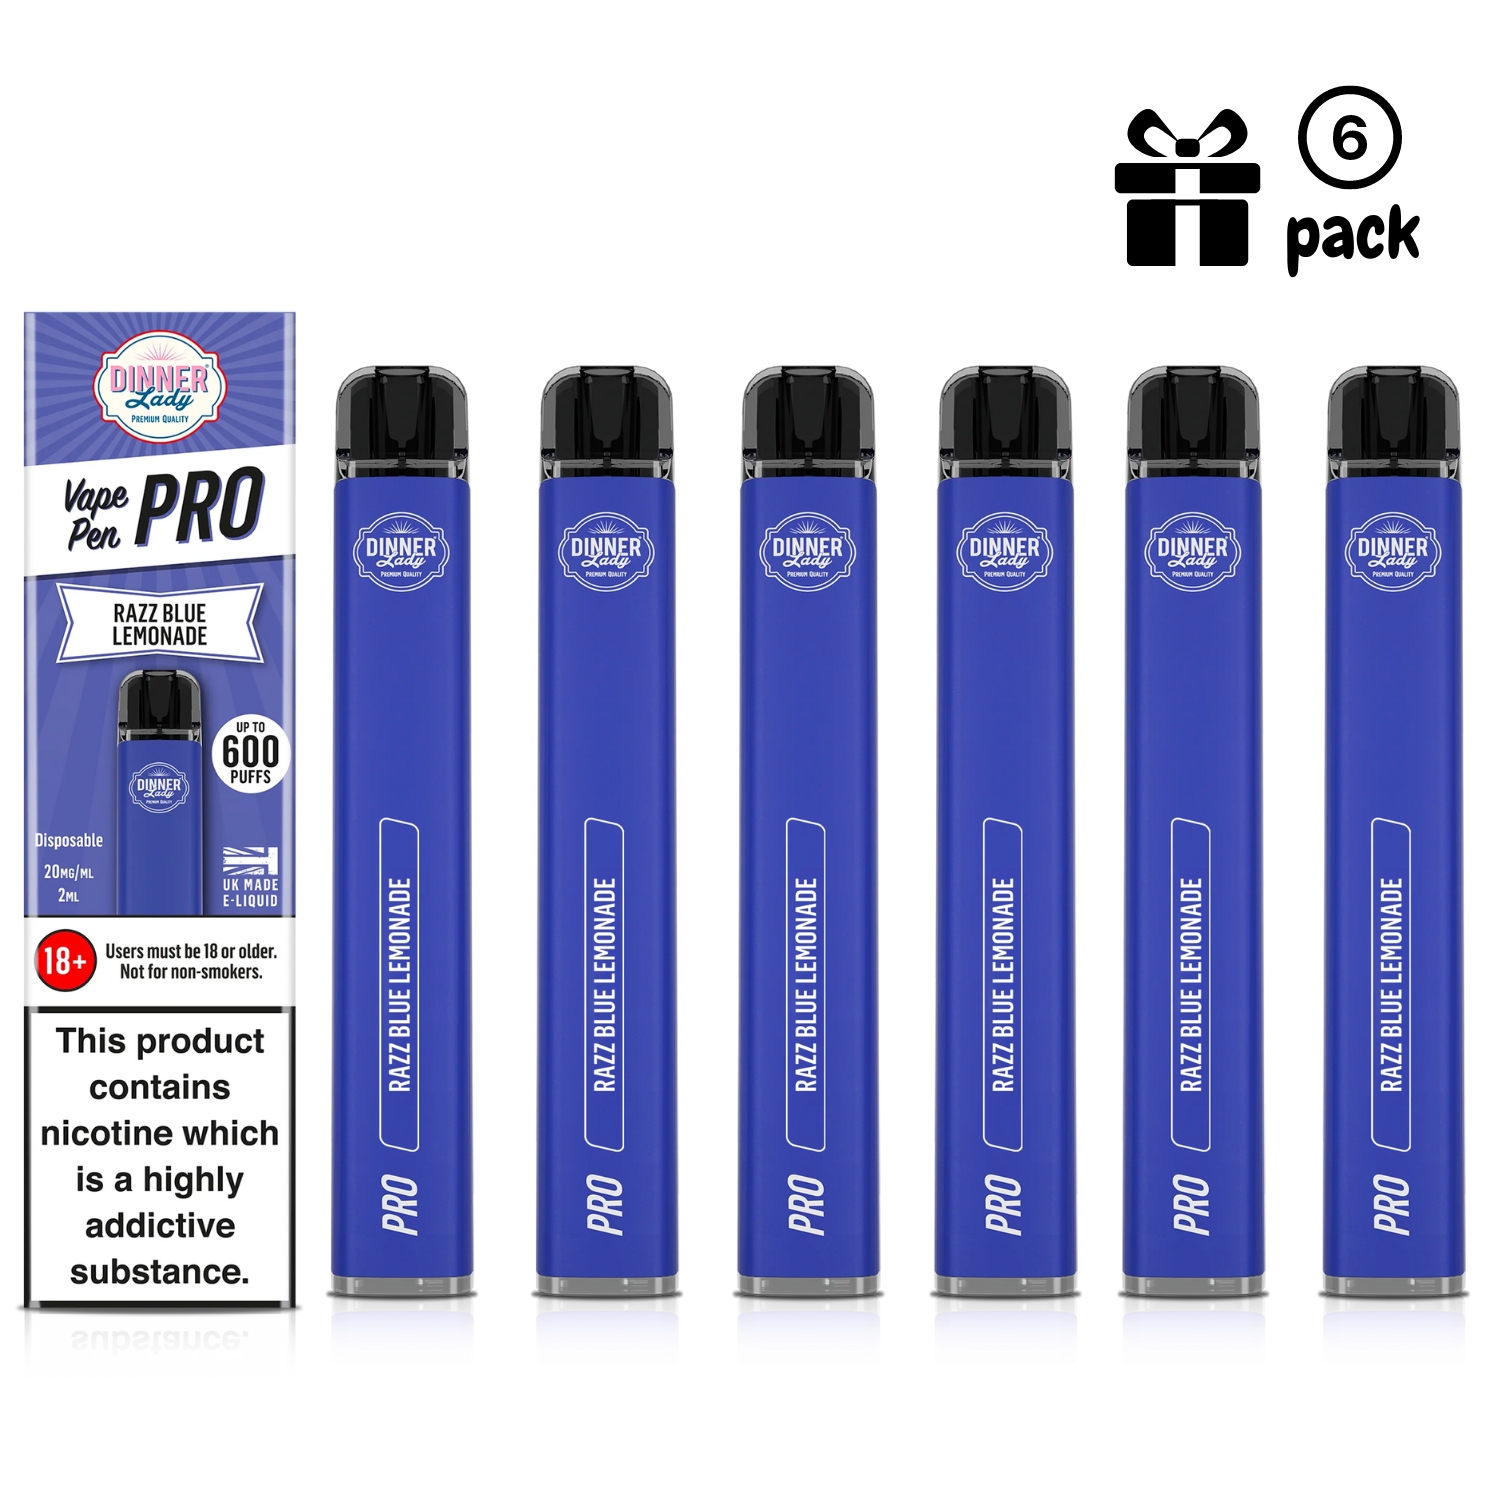 DL Vape Pen Pro Razzblue Lemonade (6 Pack)